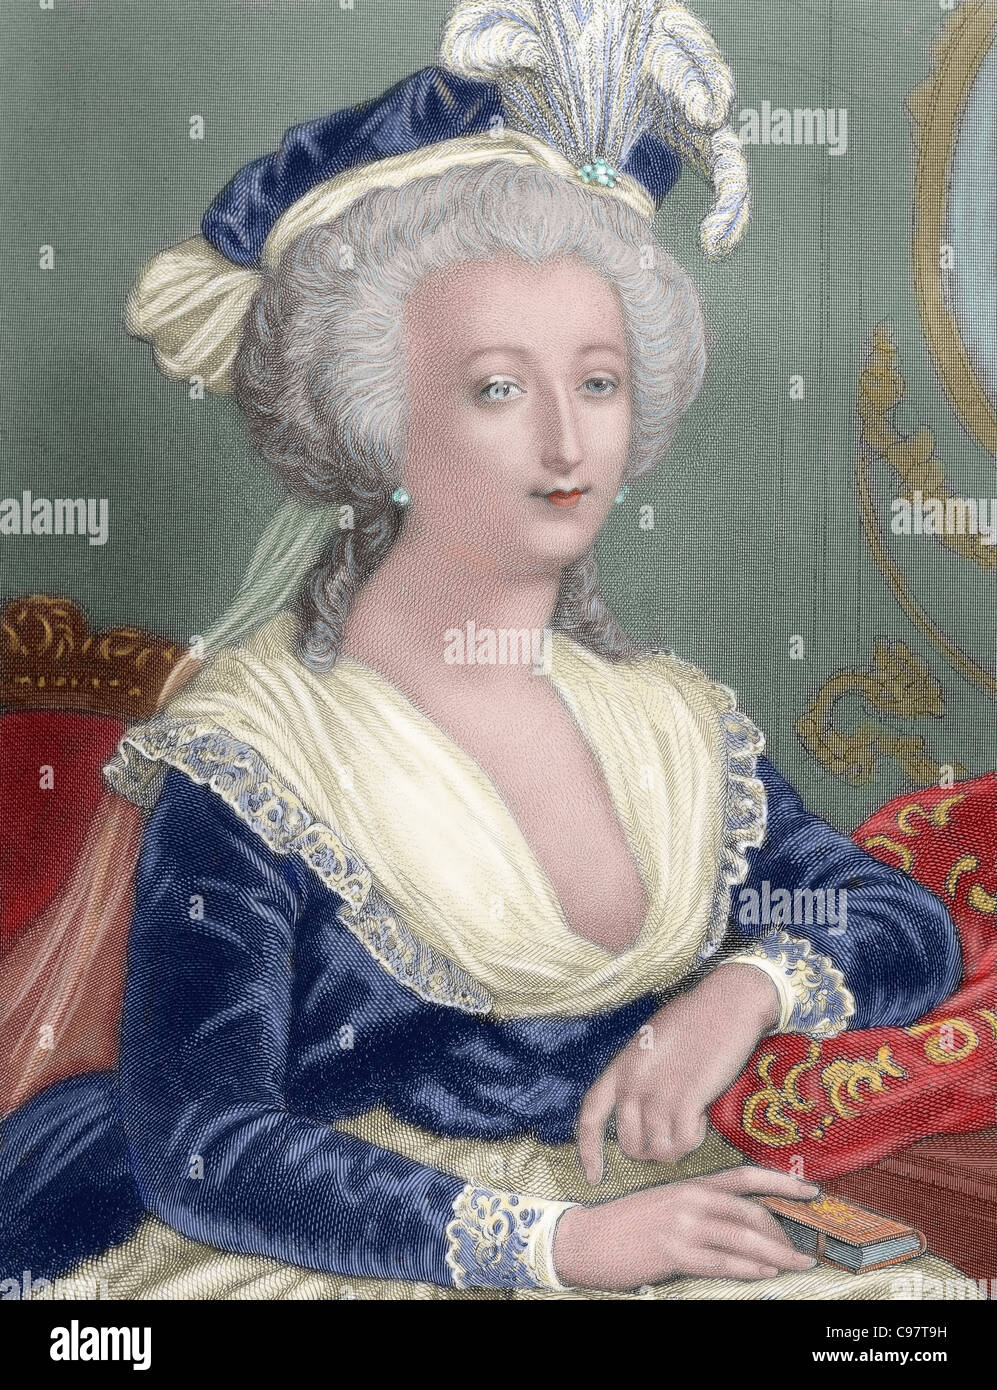 Marie Antoinette (1755-1793). Ehefrau von Ludwig XVI. und Königin von Frankreich (1774-92). Porträt. Farbige Gravur. Stockfoto